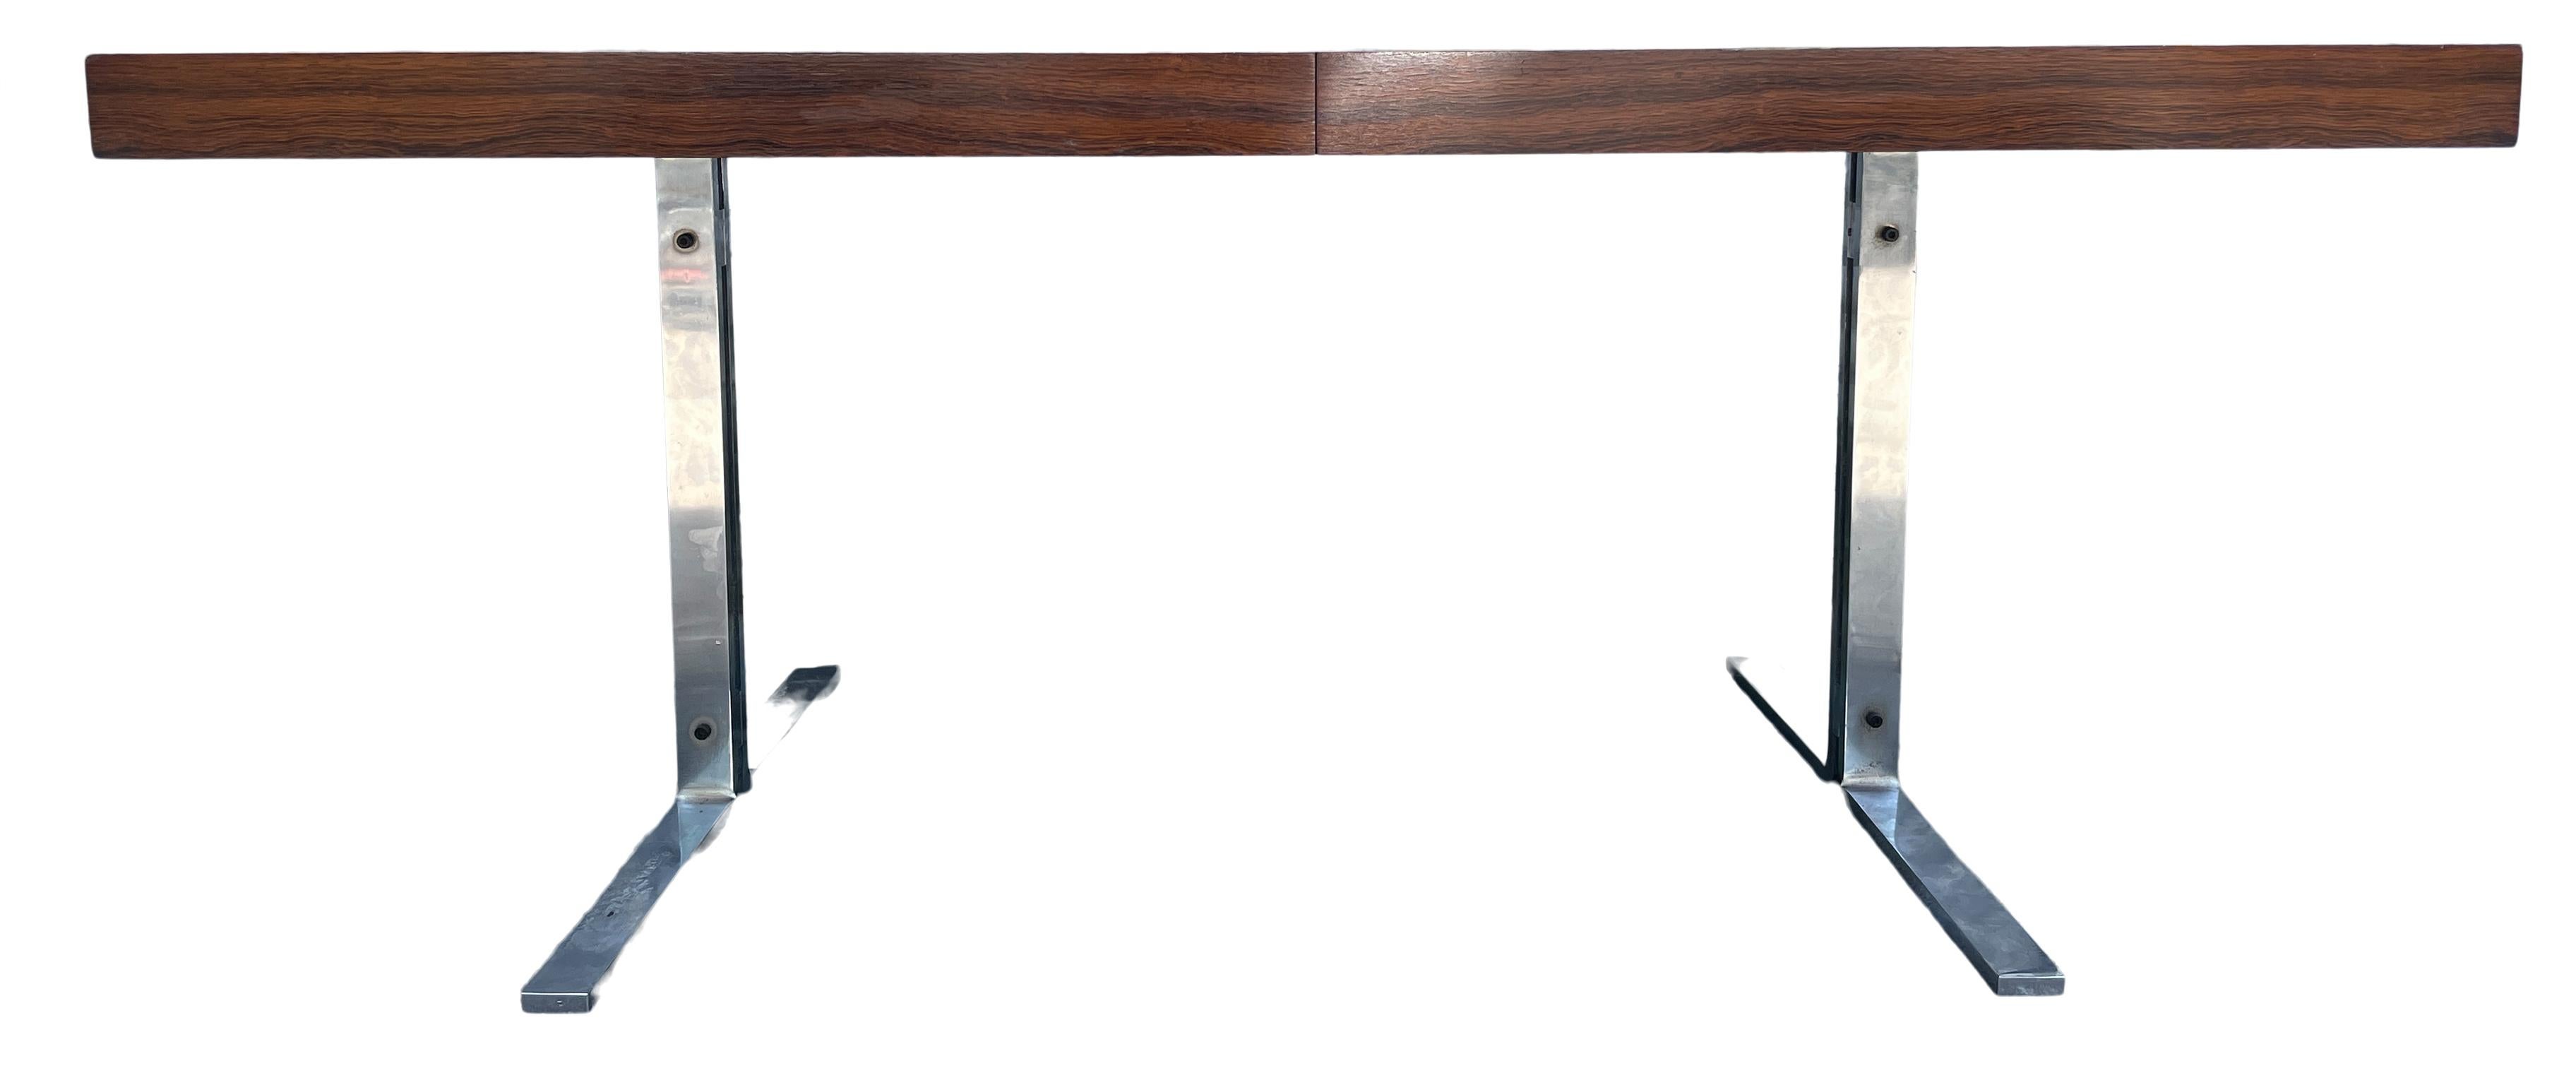 Magnifique table de salle à manger rare en palissandre brésilien avec un plateau de forme rectangulaire sur des pieds chromés. La table à manger a une feuille qui est amovible et se range sous la table. La feuille est un peu plus foncée en raison de